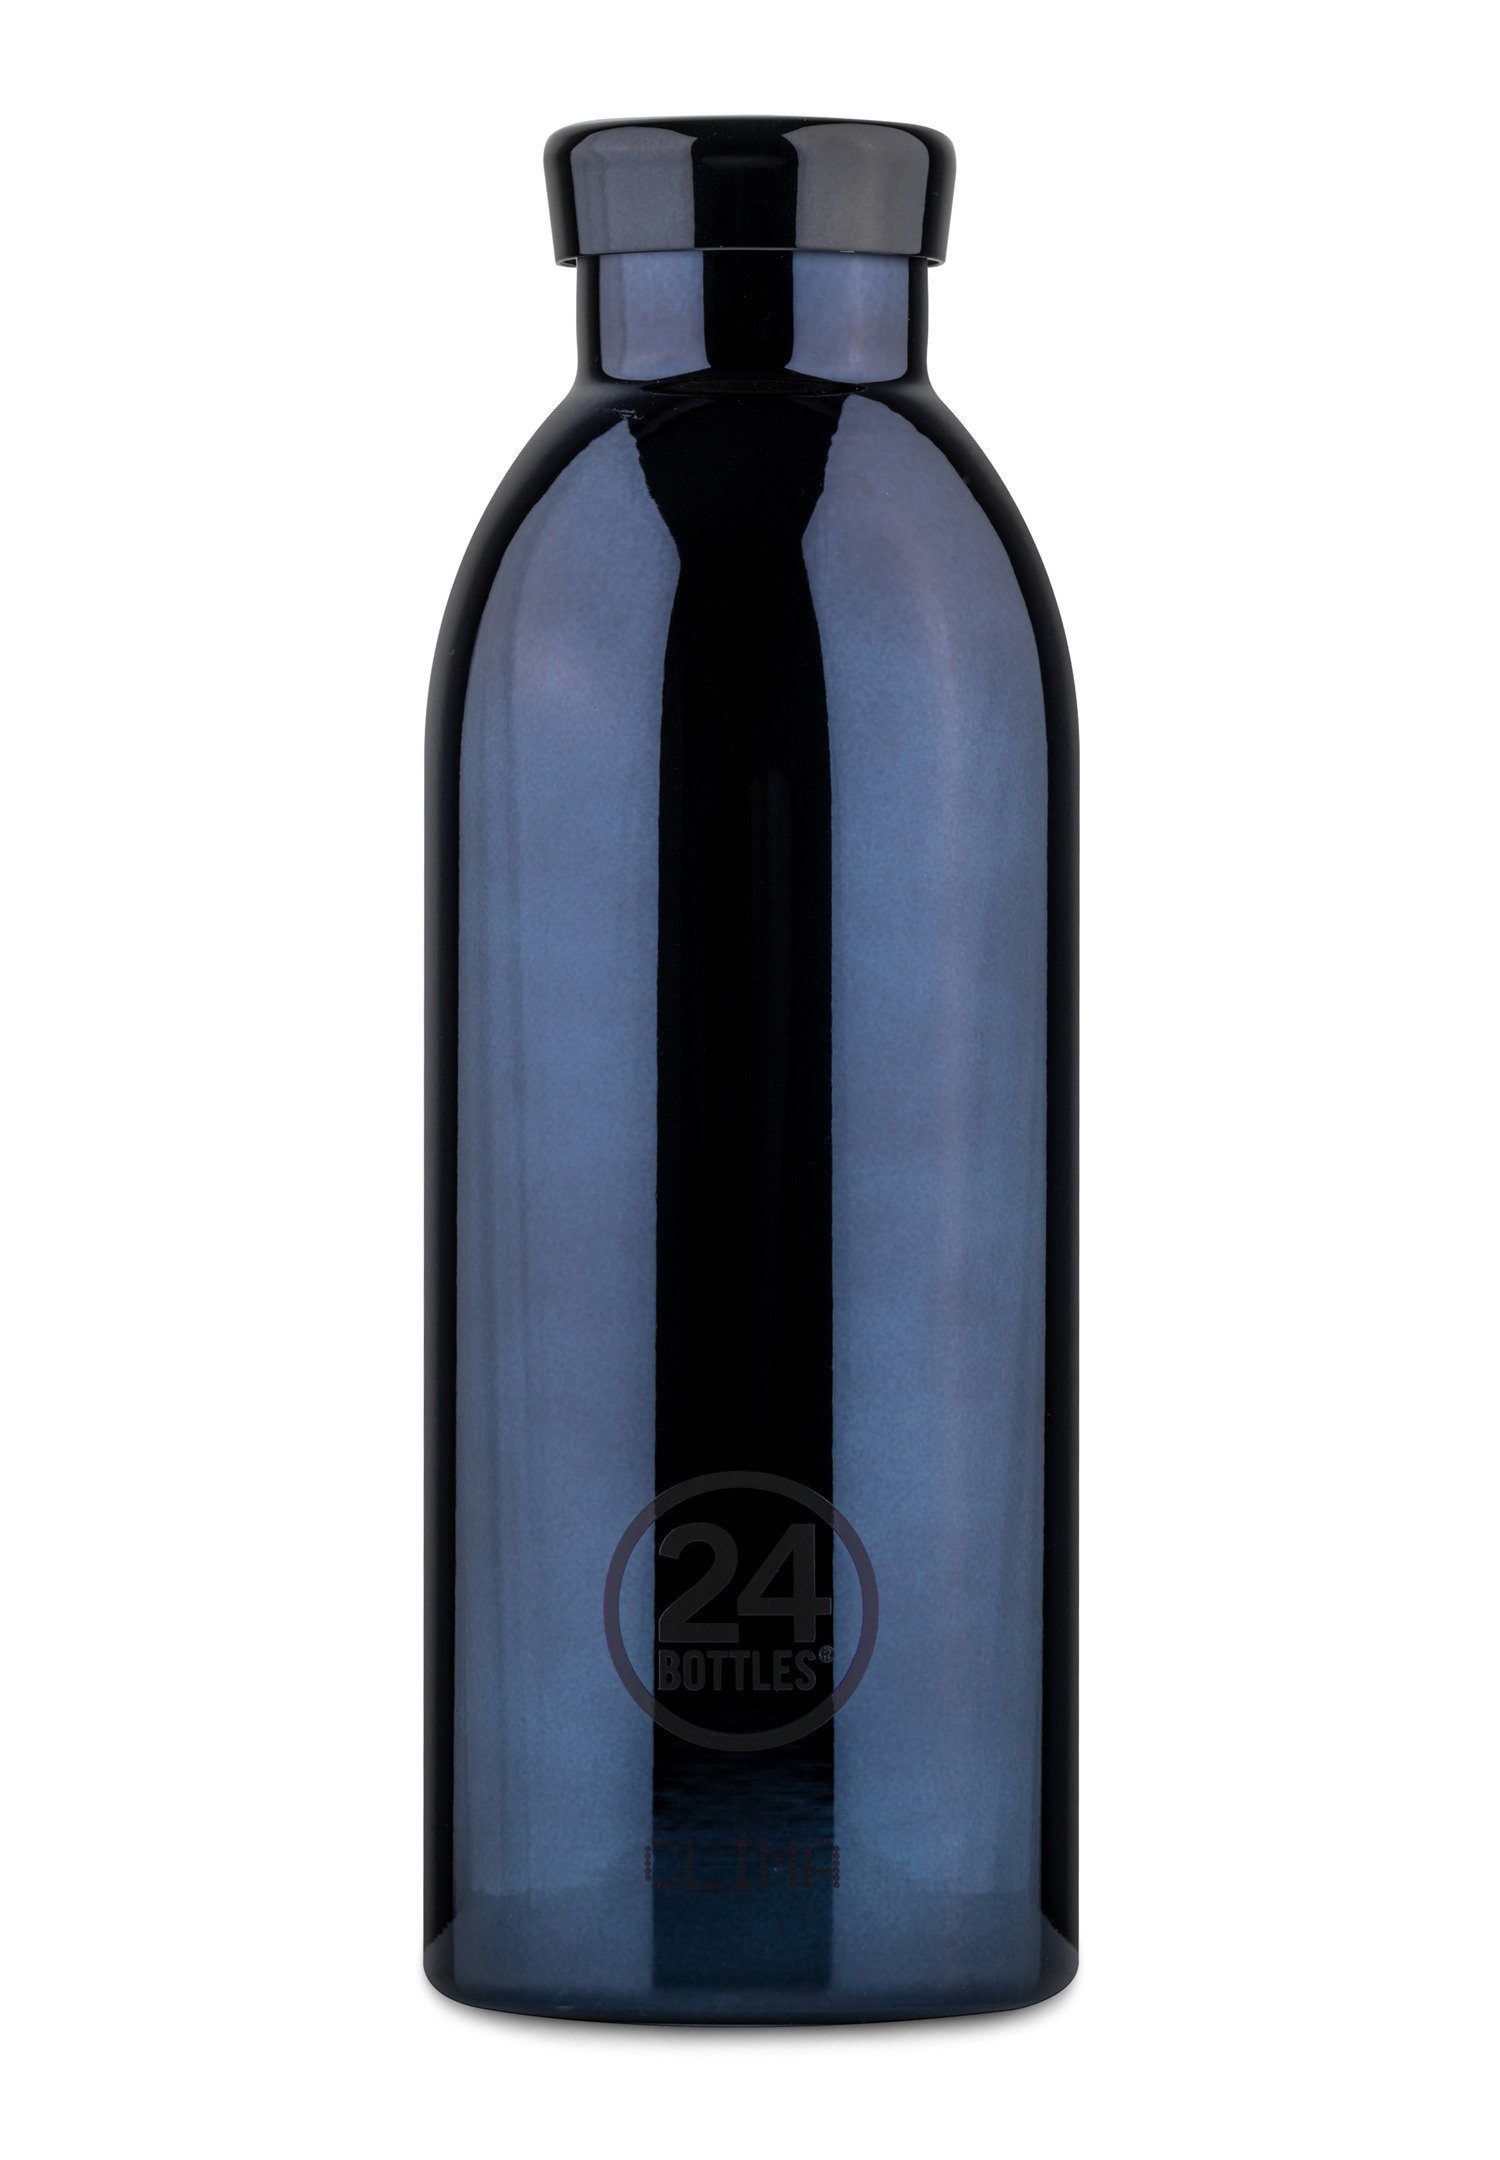 Trinkflasche Bottles Black 24 Radiance